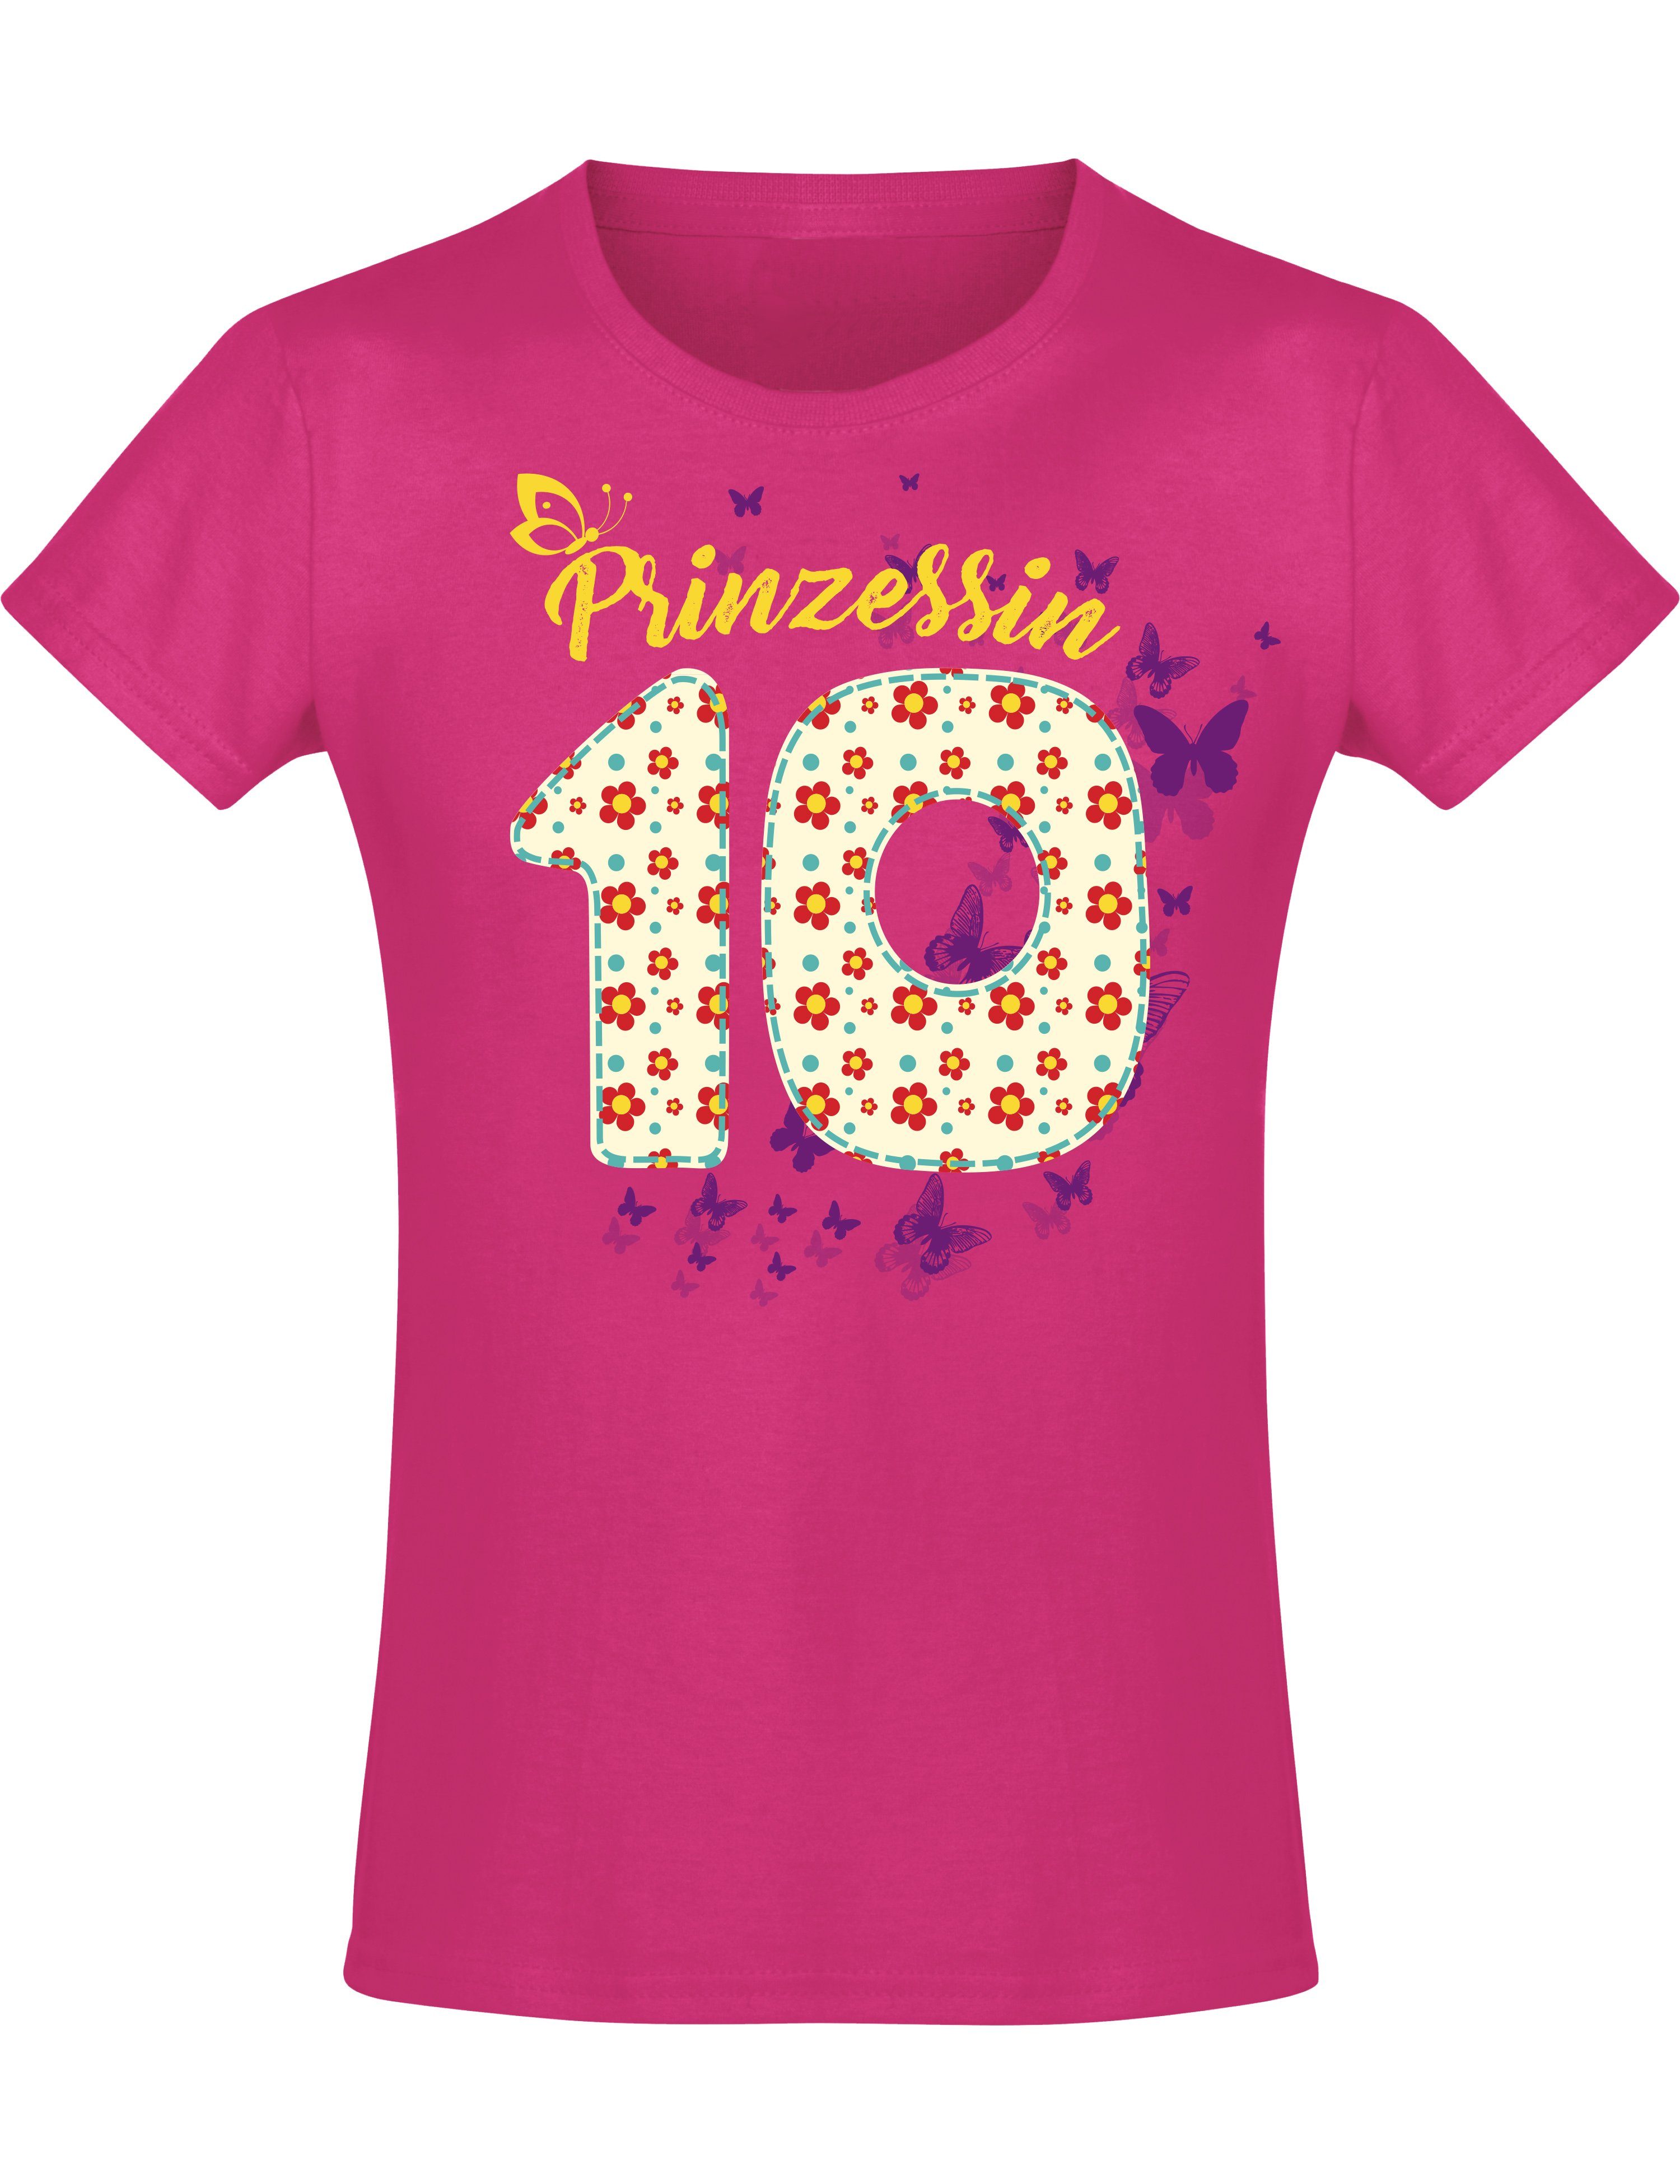 Siebdruck, Baddery aus mit für Mädchen Baumwolle 10 : Geburstagsgeschenk Blumen, hochwertiger Print-Shirt Jahre